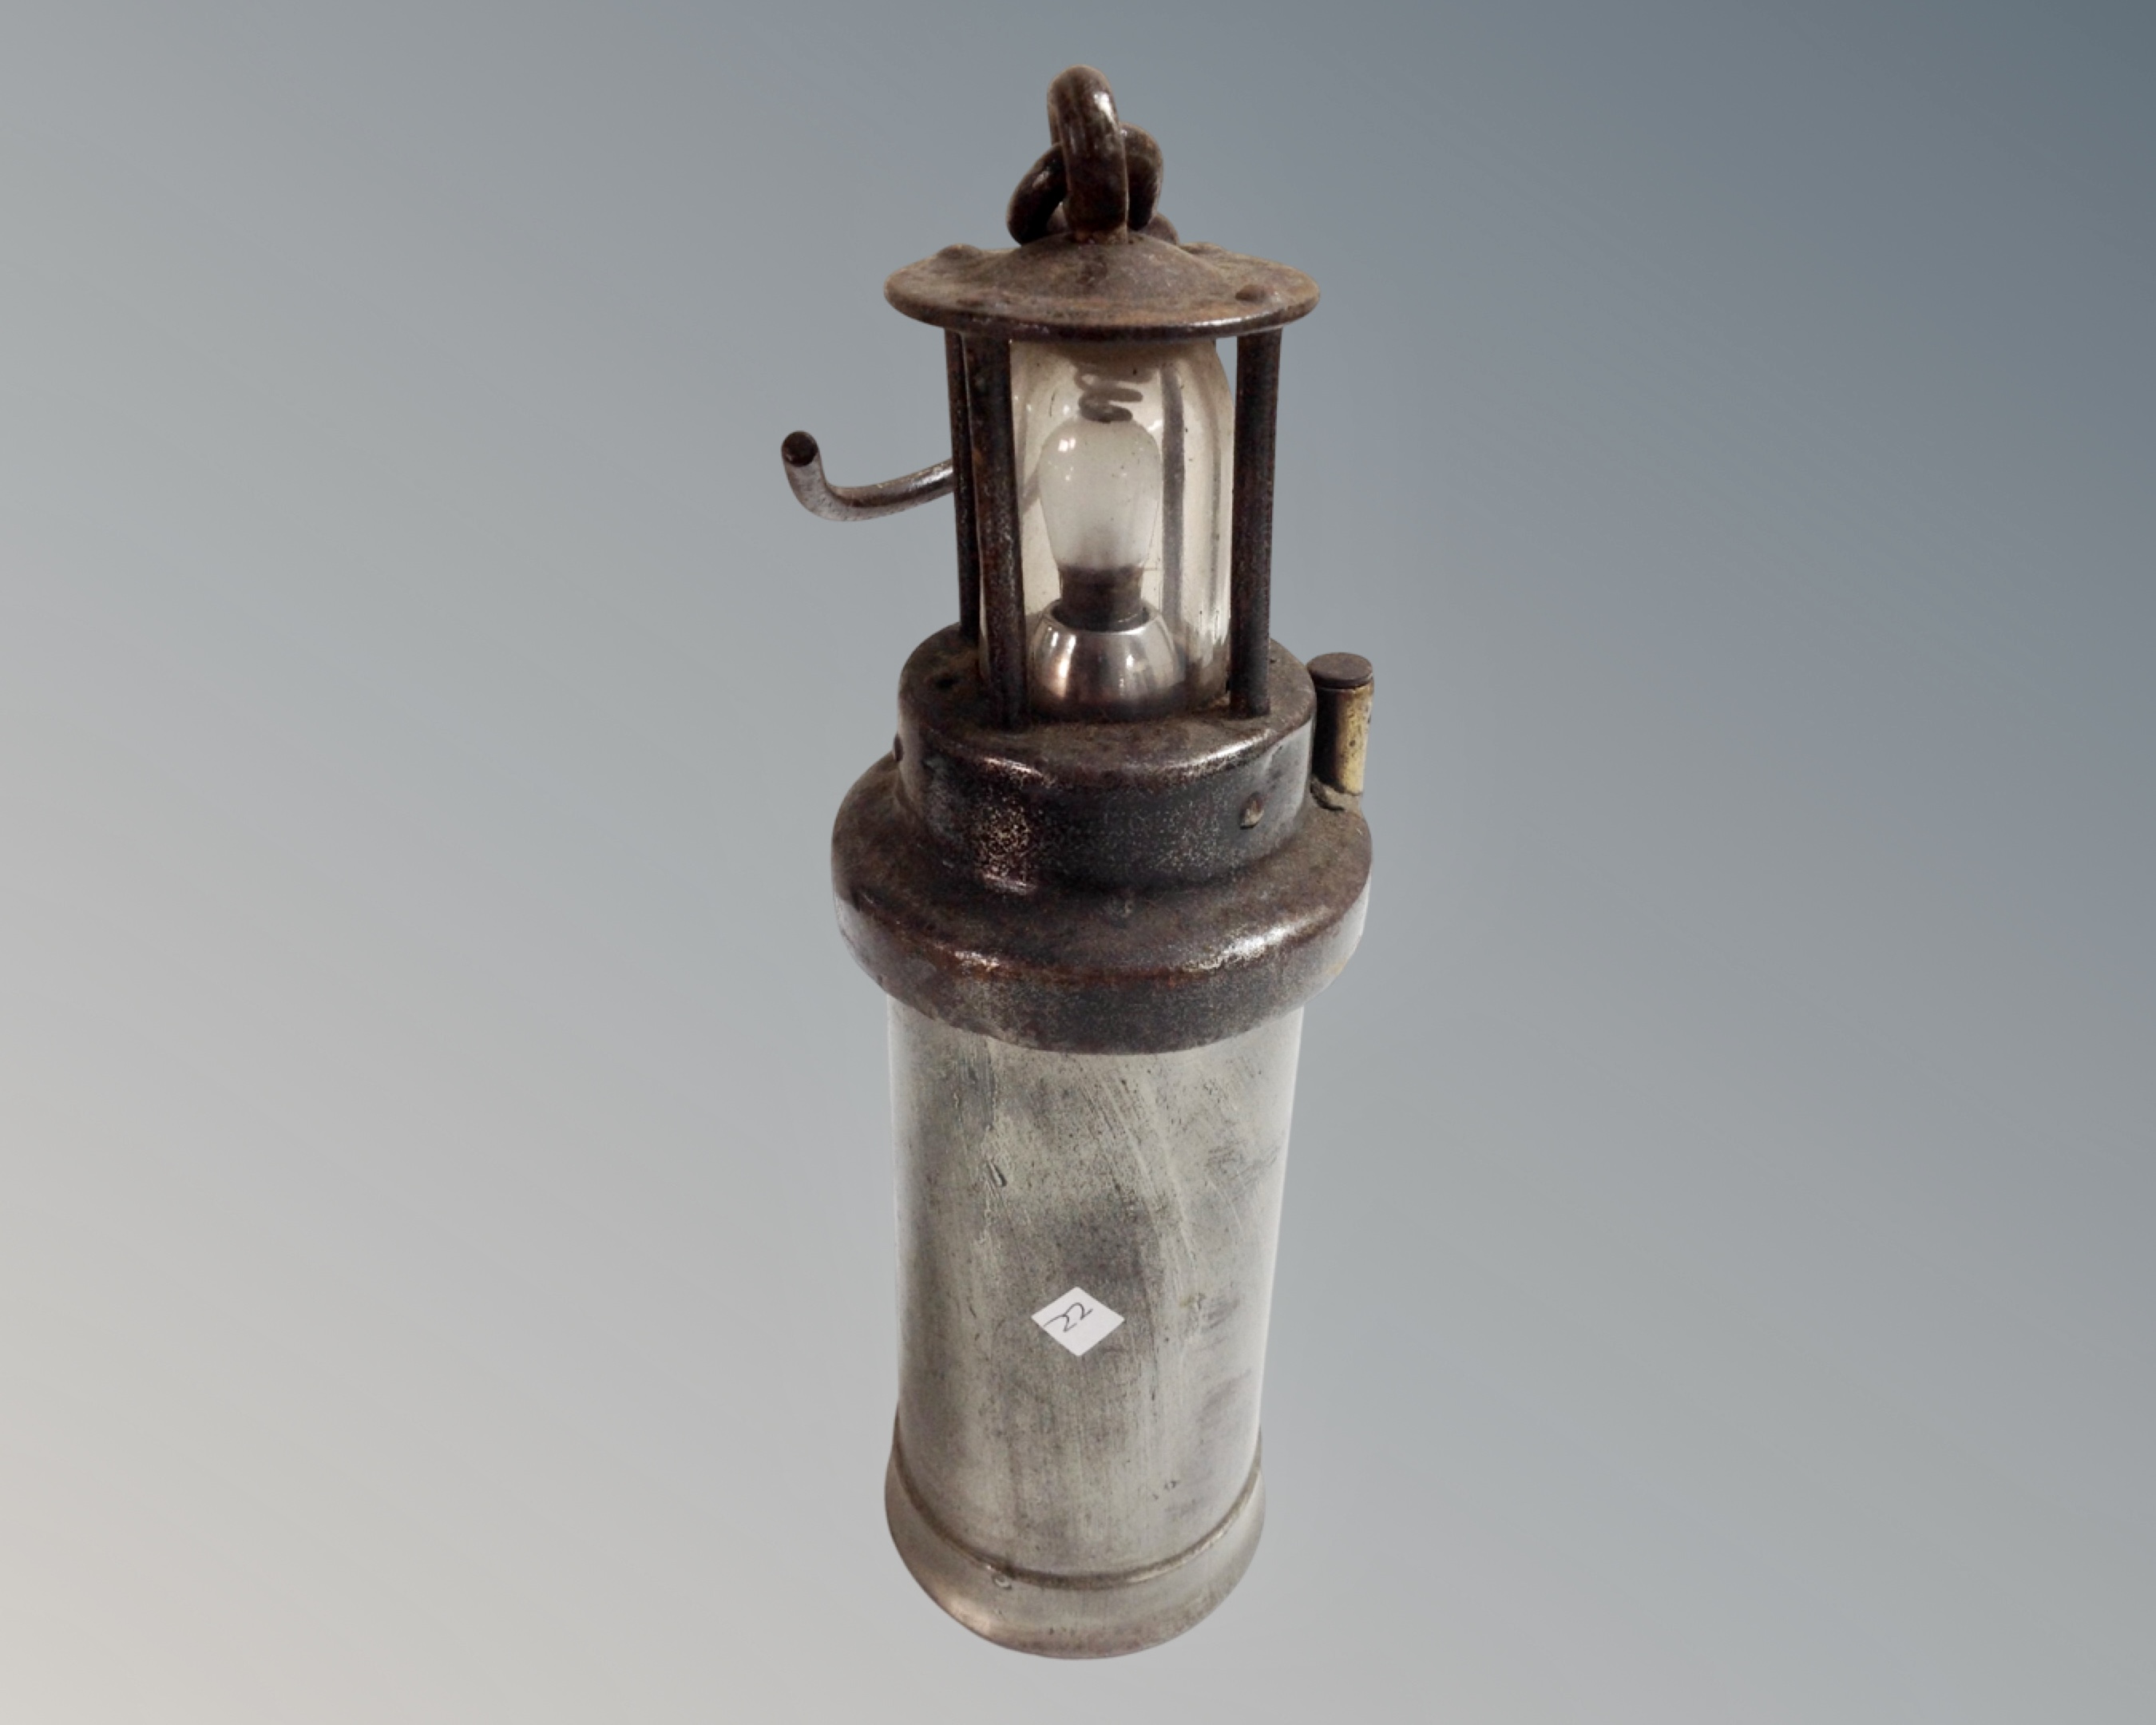 A vintage CEAG Standard miner's lamp